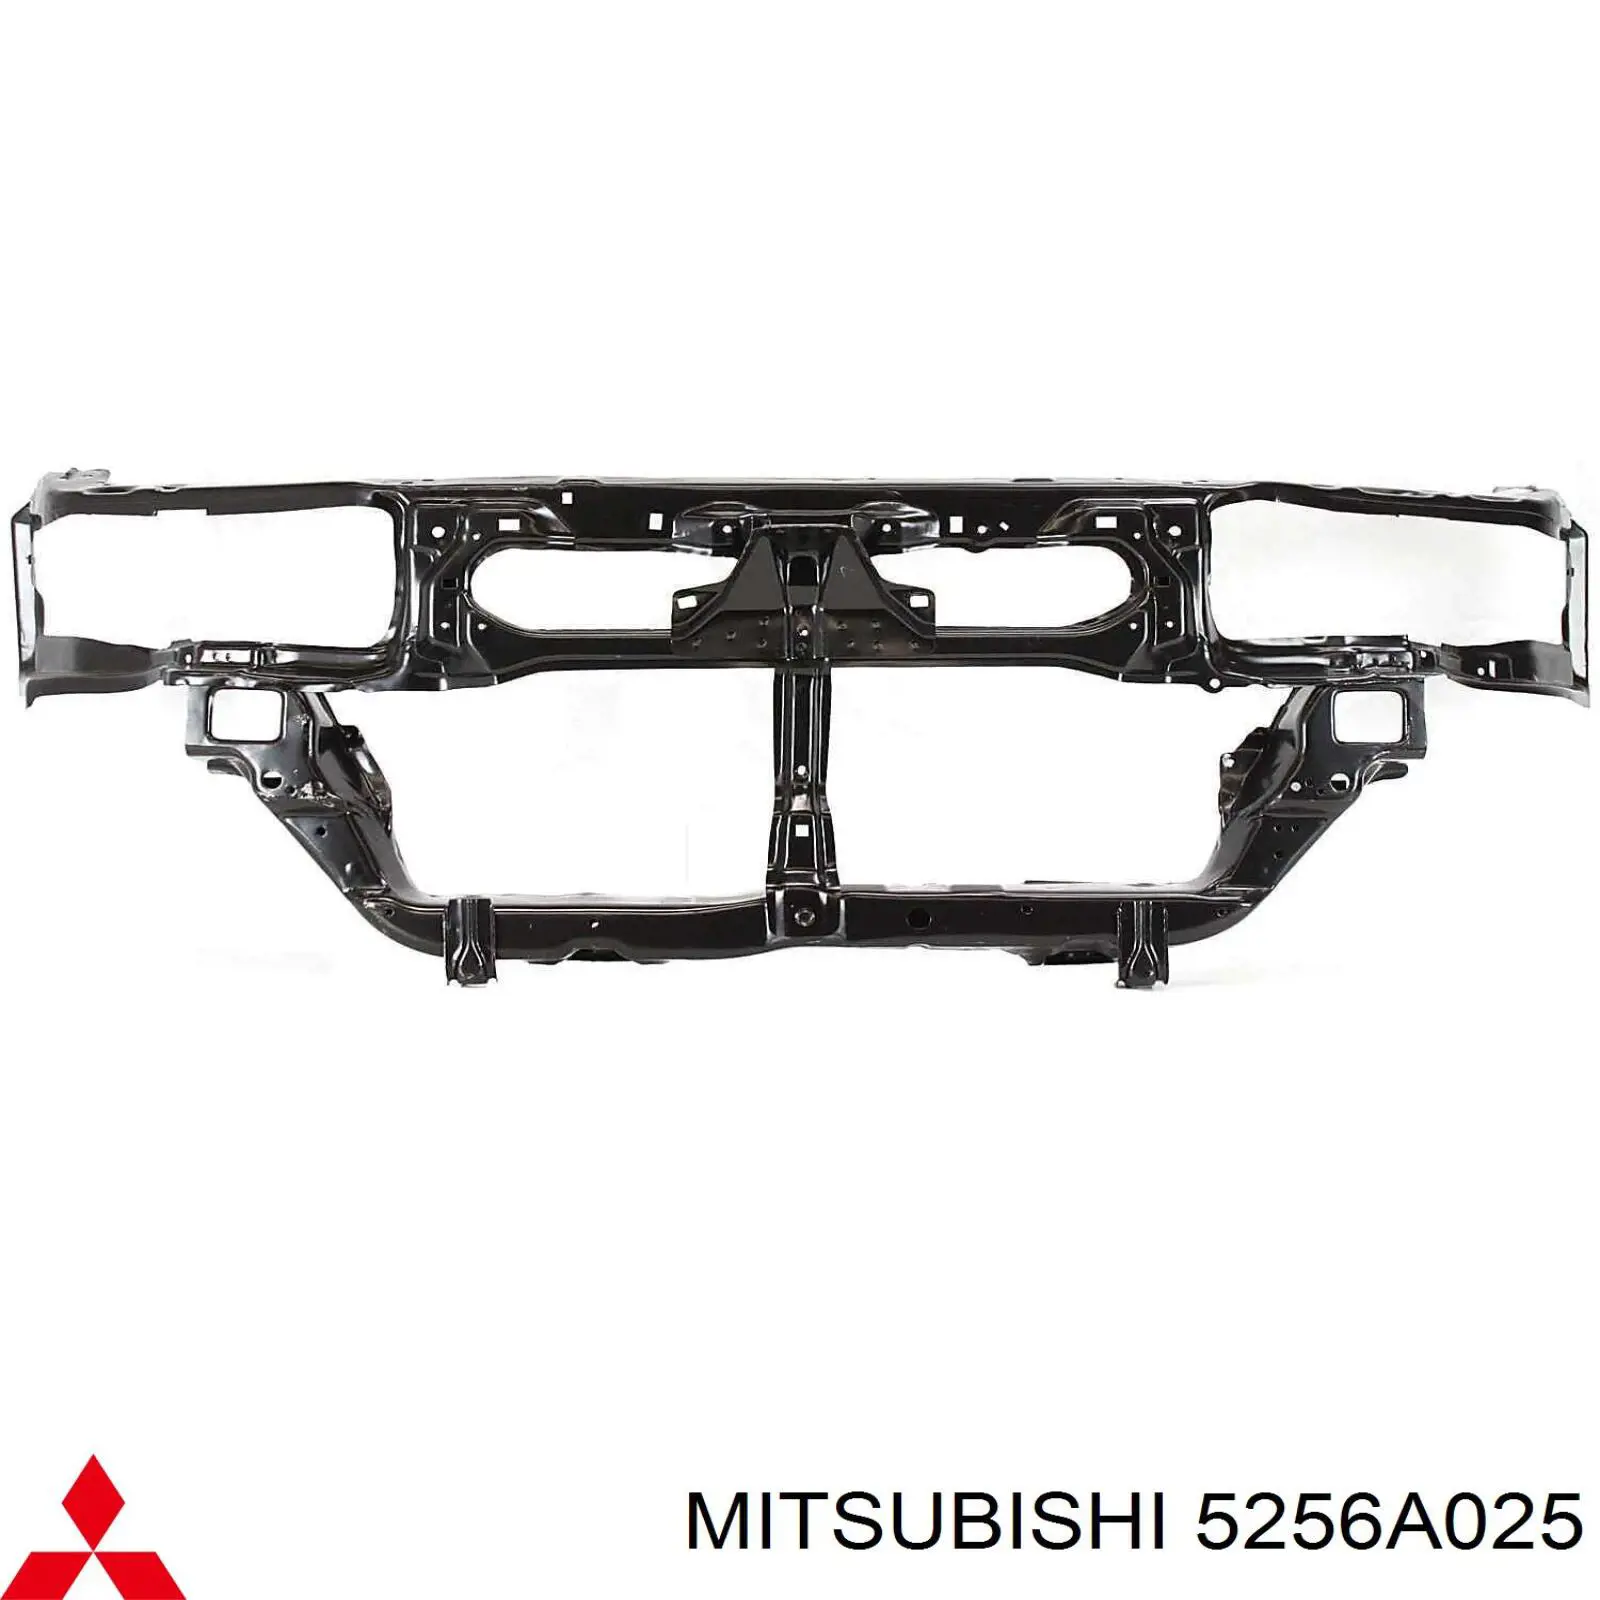 Суппорт радиатора нижний (монтажная панель крепления фар) на Mitsubishi Galant 